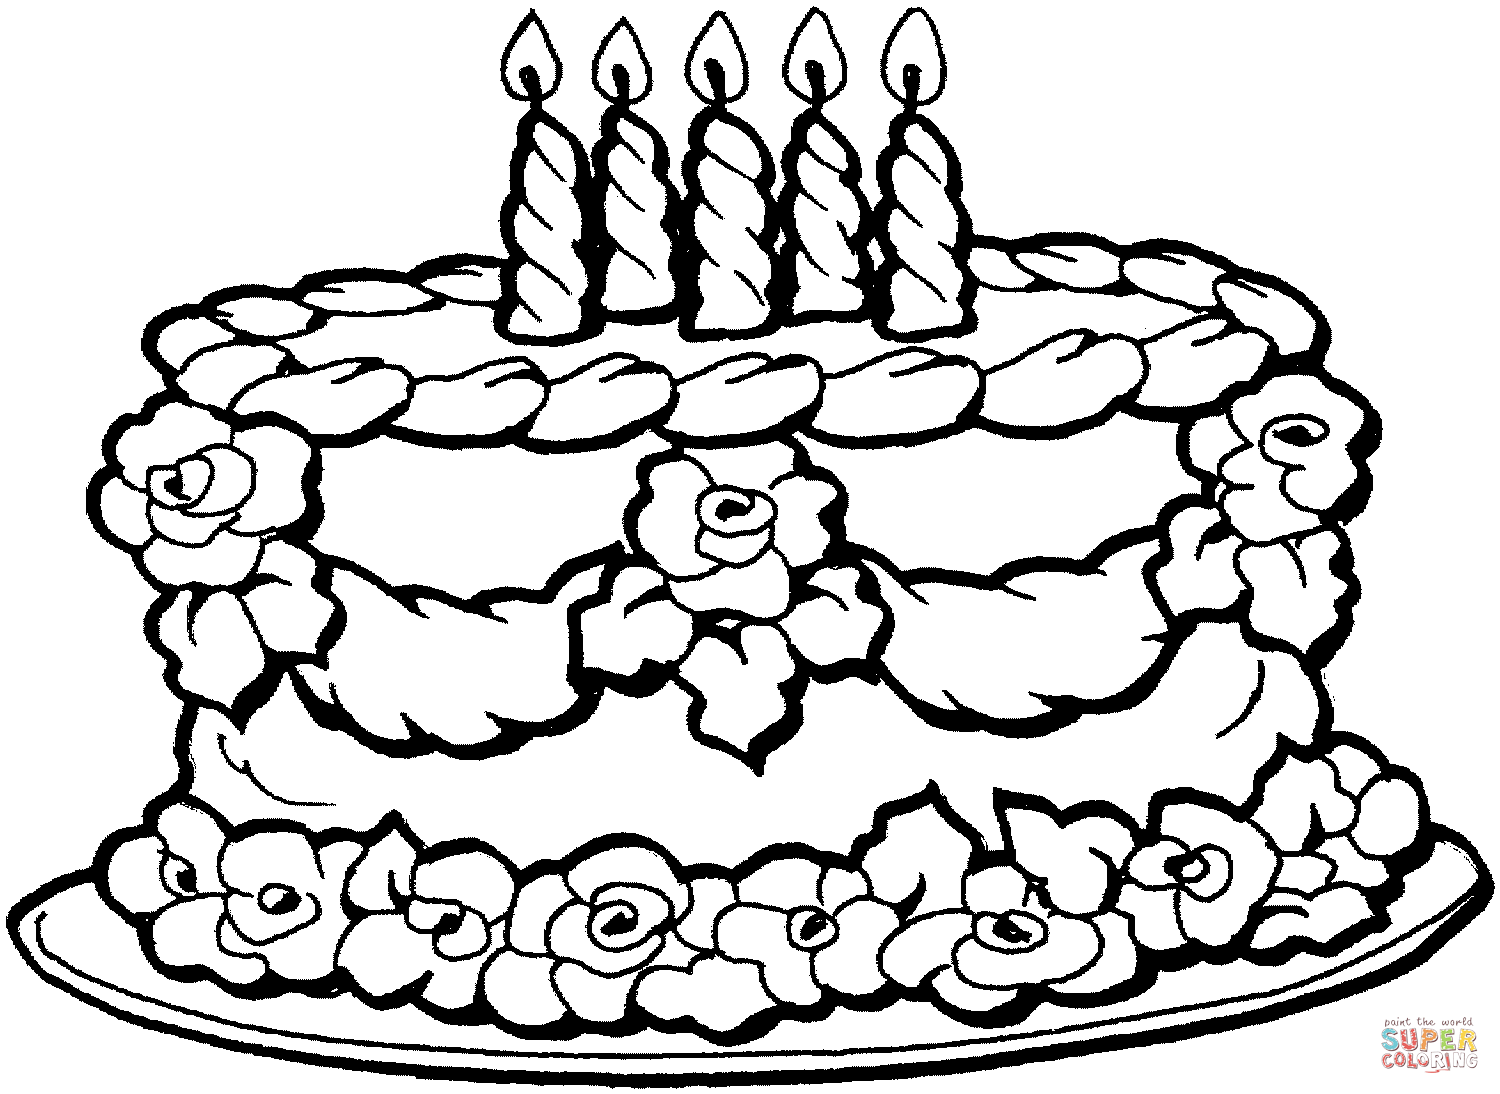 Розмальовки Торти та тістечка  Торт, свято, день народження, свічки, трояндочки з крему